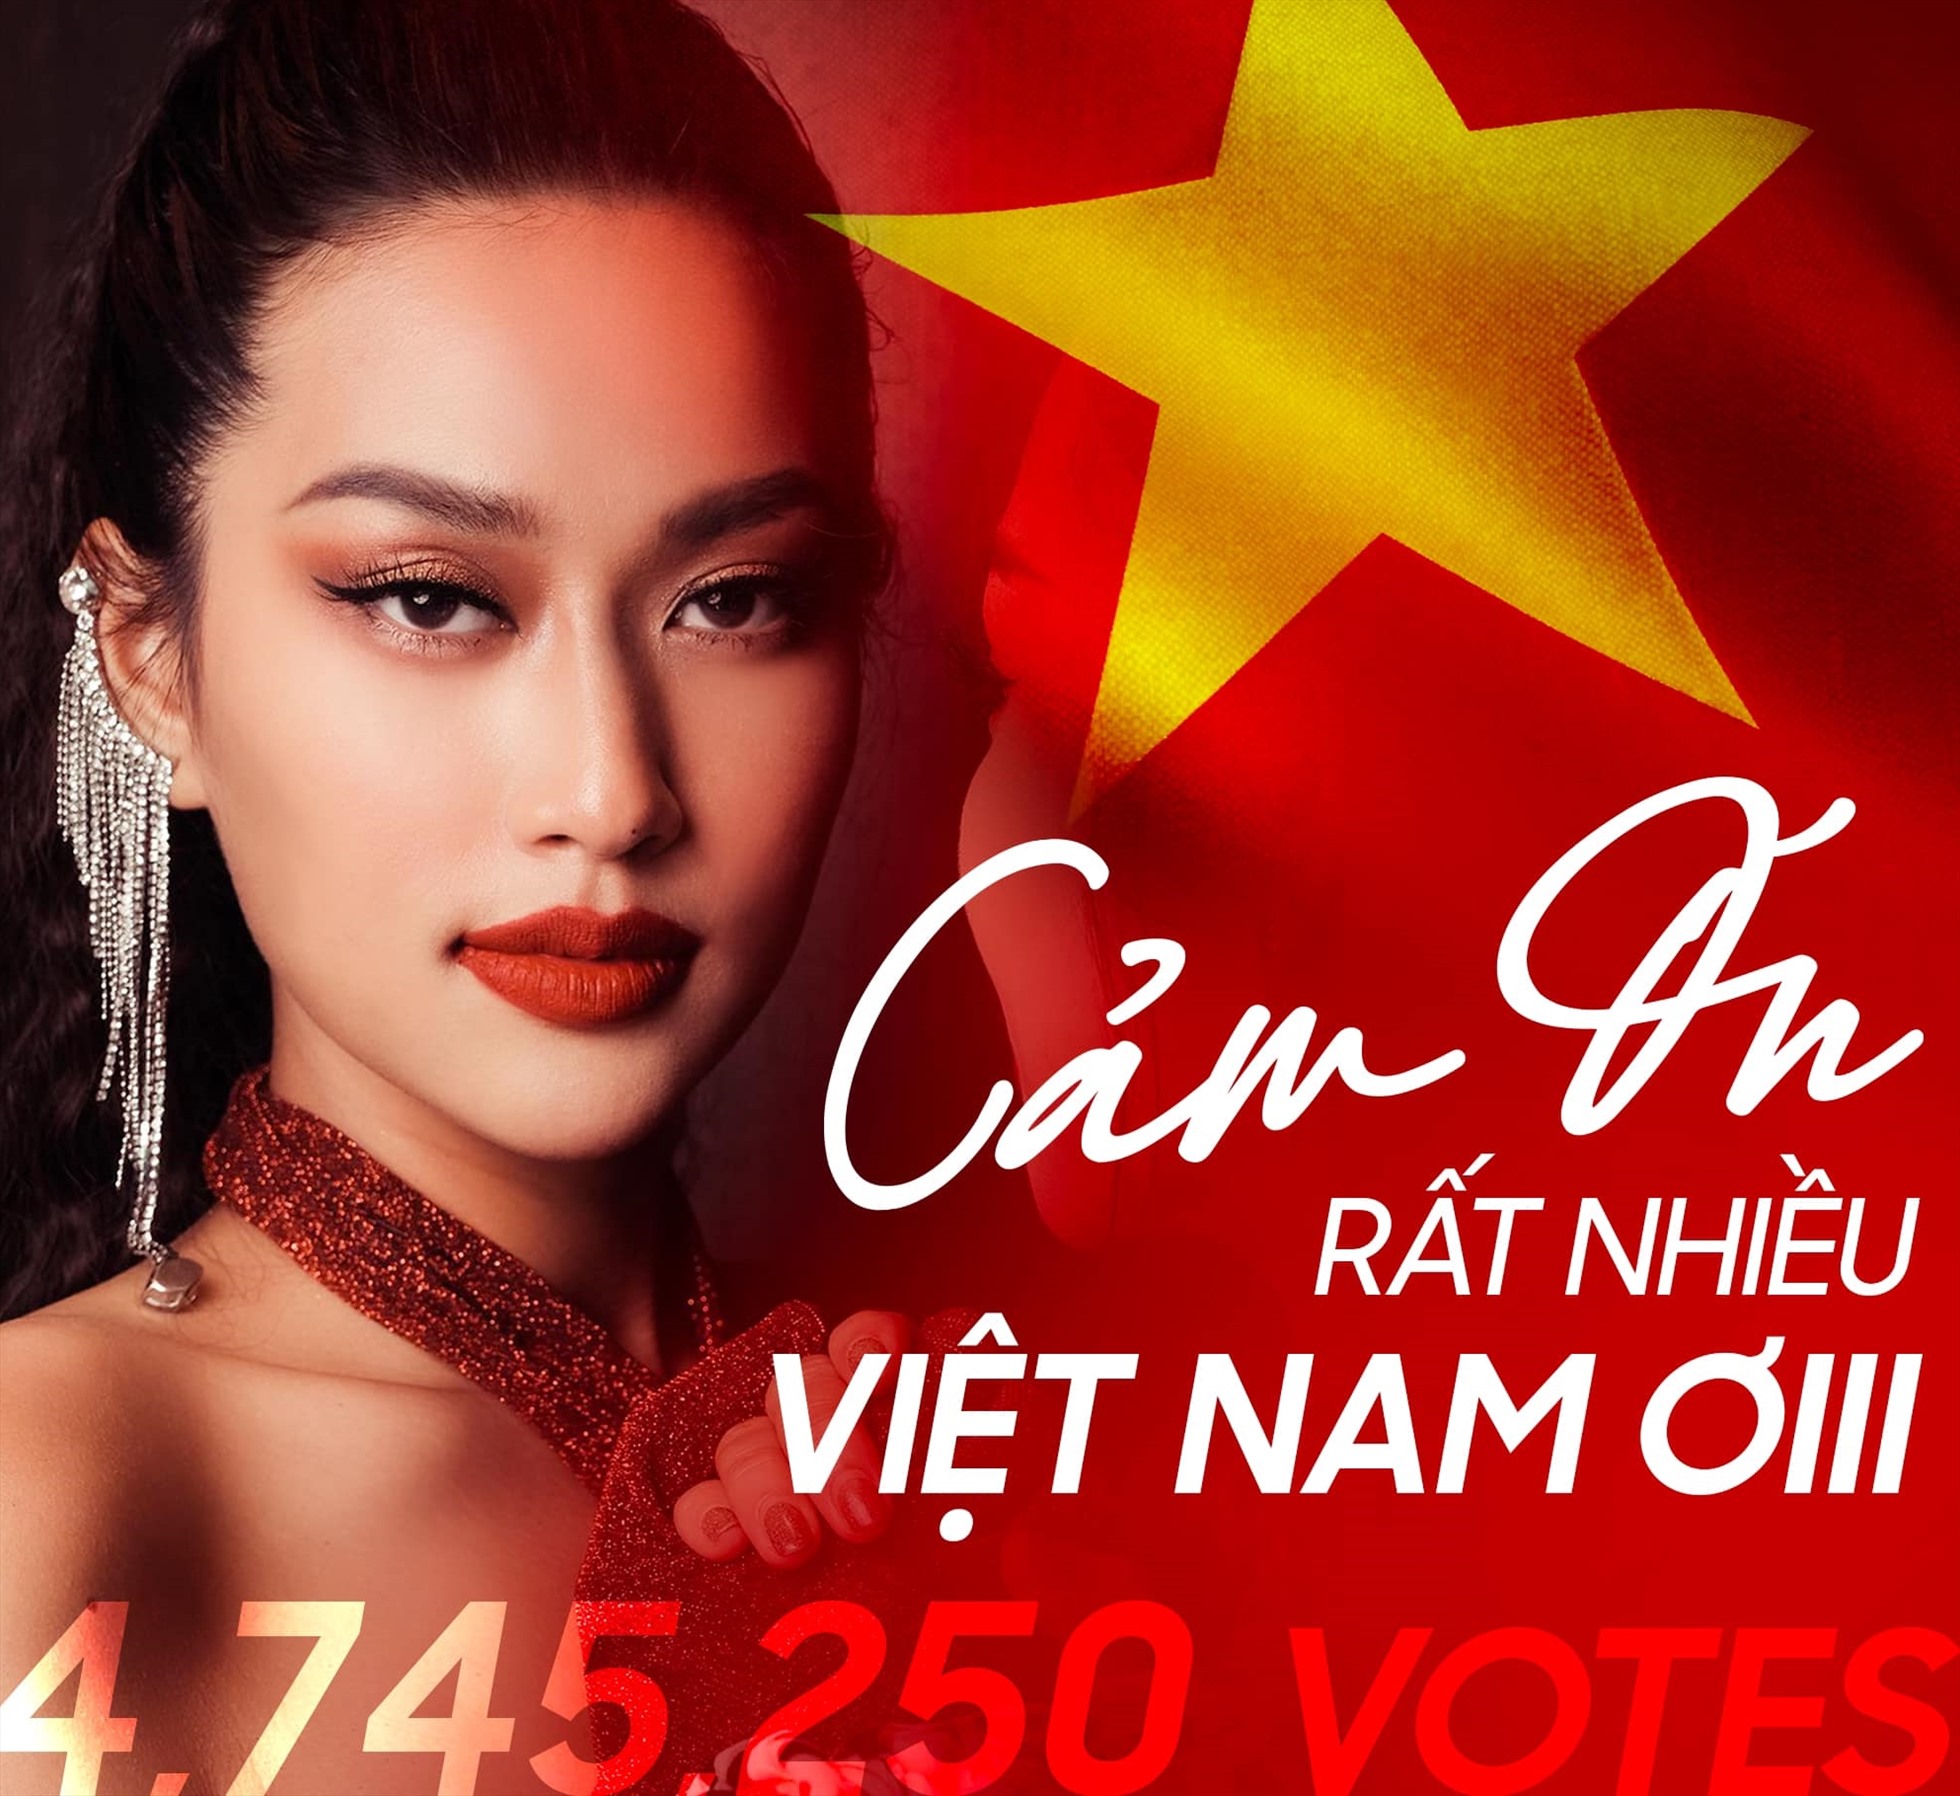 Thiên Ân nhận được số lượng bình chọn từ khán giả cao kỷ lục cho một người đẹp Việt Nam tại cuộc thi nhan sắc quốc tế. Ảnh: FBNV